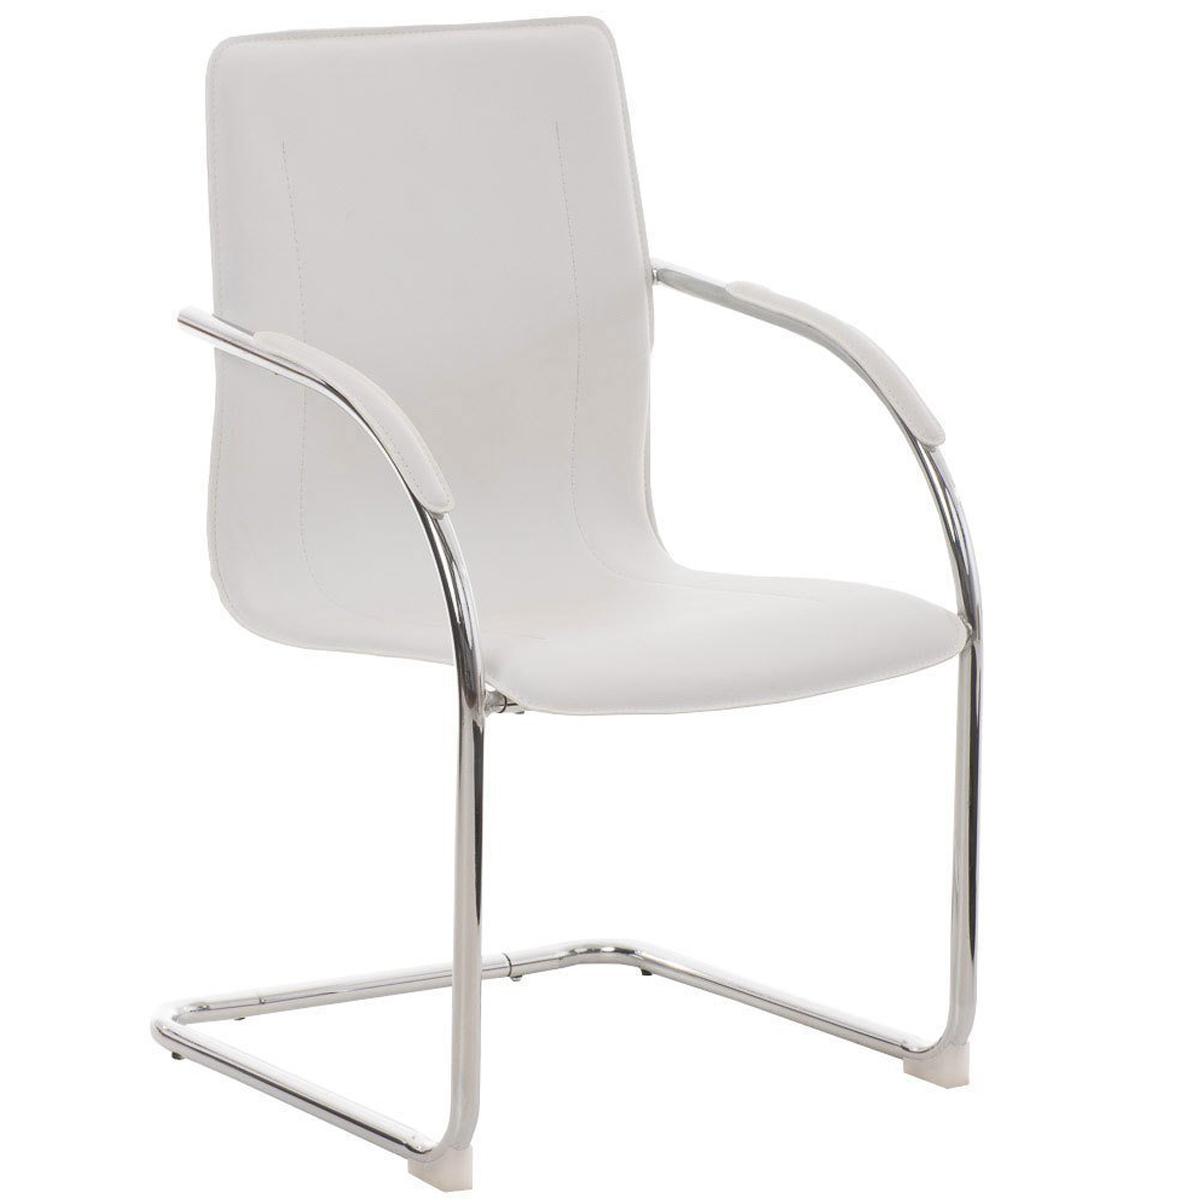 Chaise Visiteur FLAP, Structure Métallique, Design élégant et moderne, Cuir, Blanc